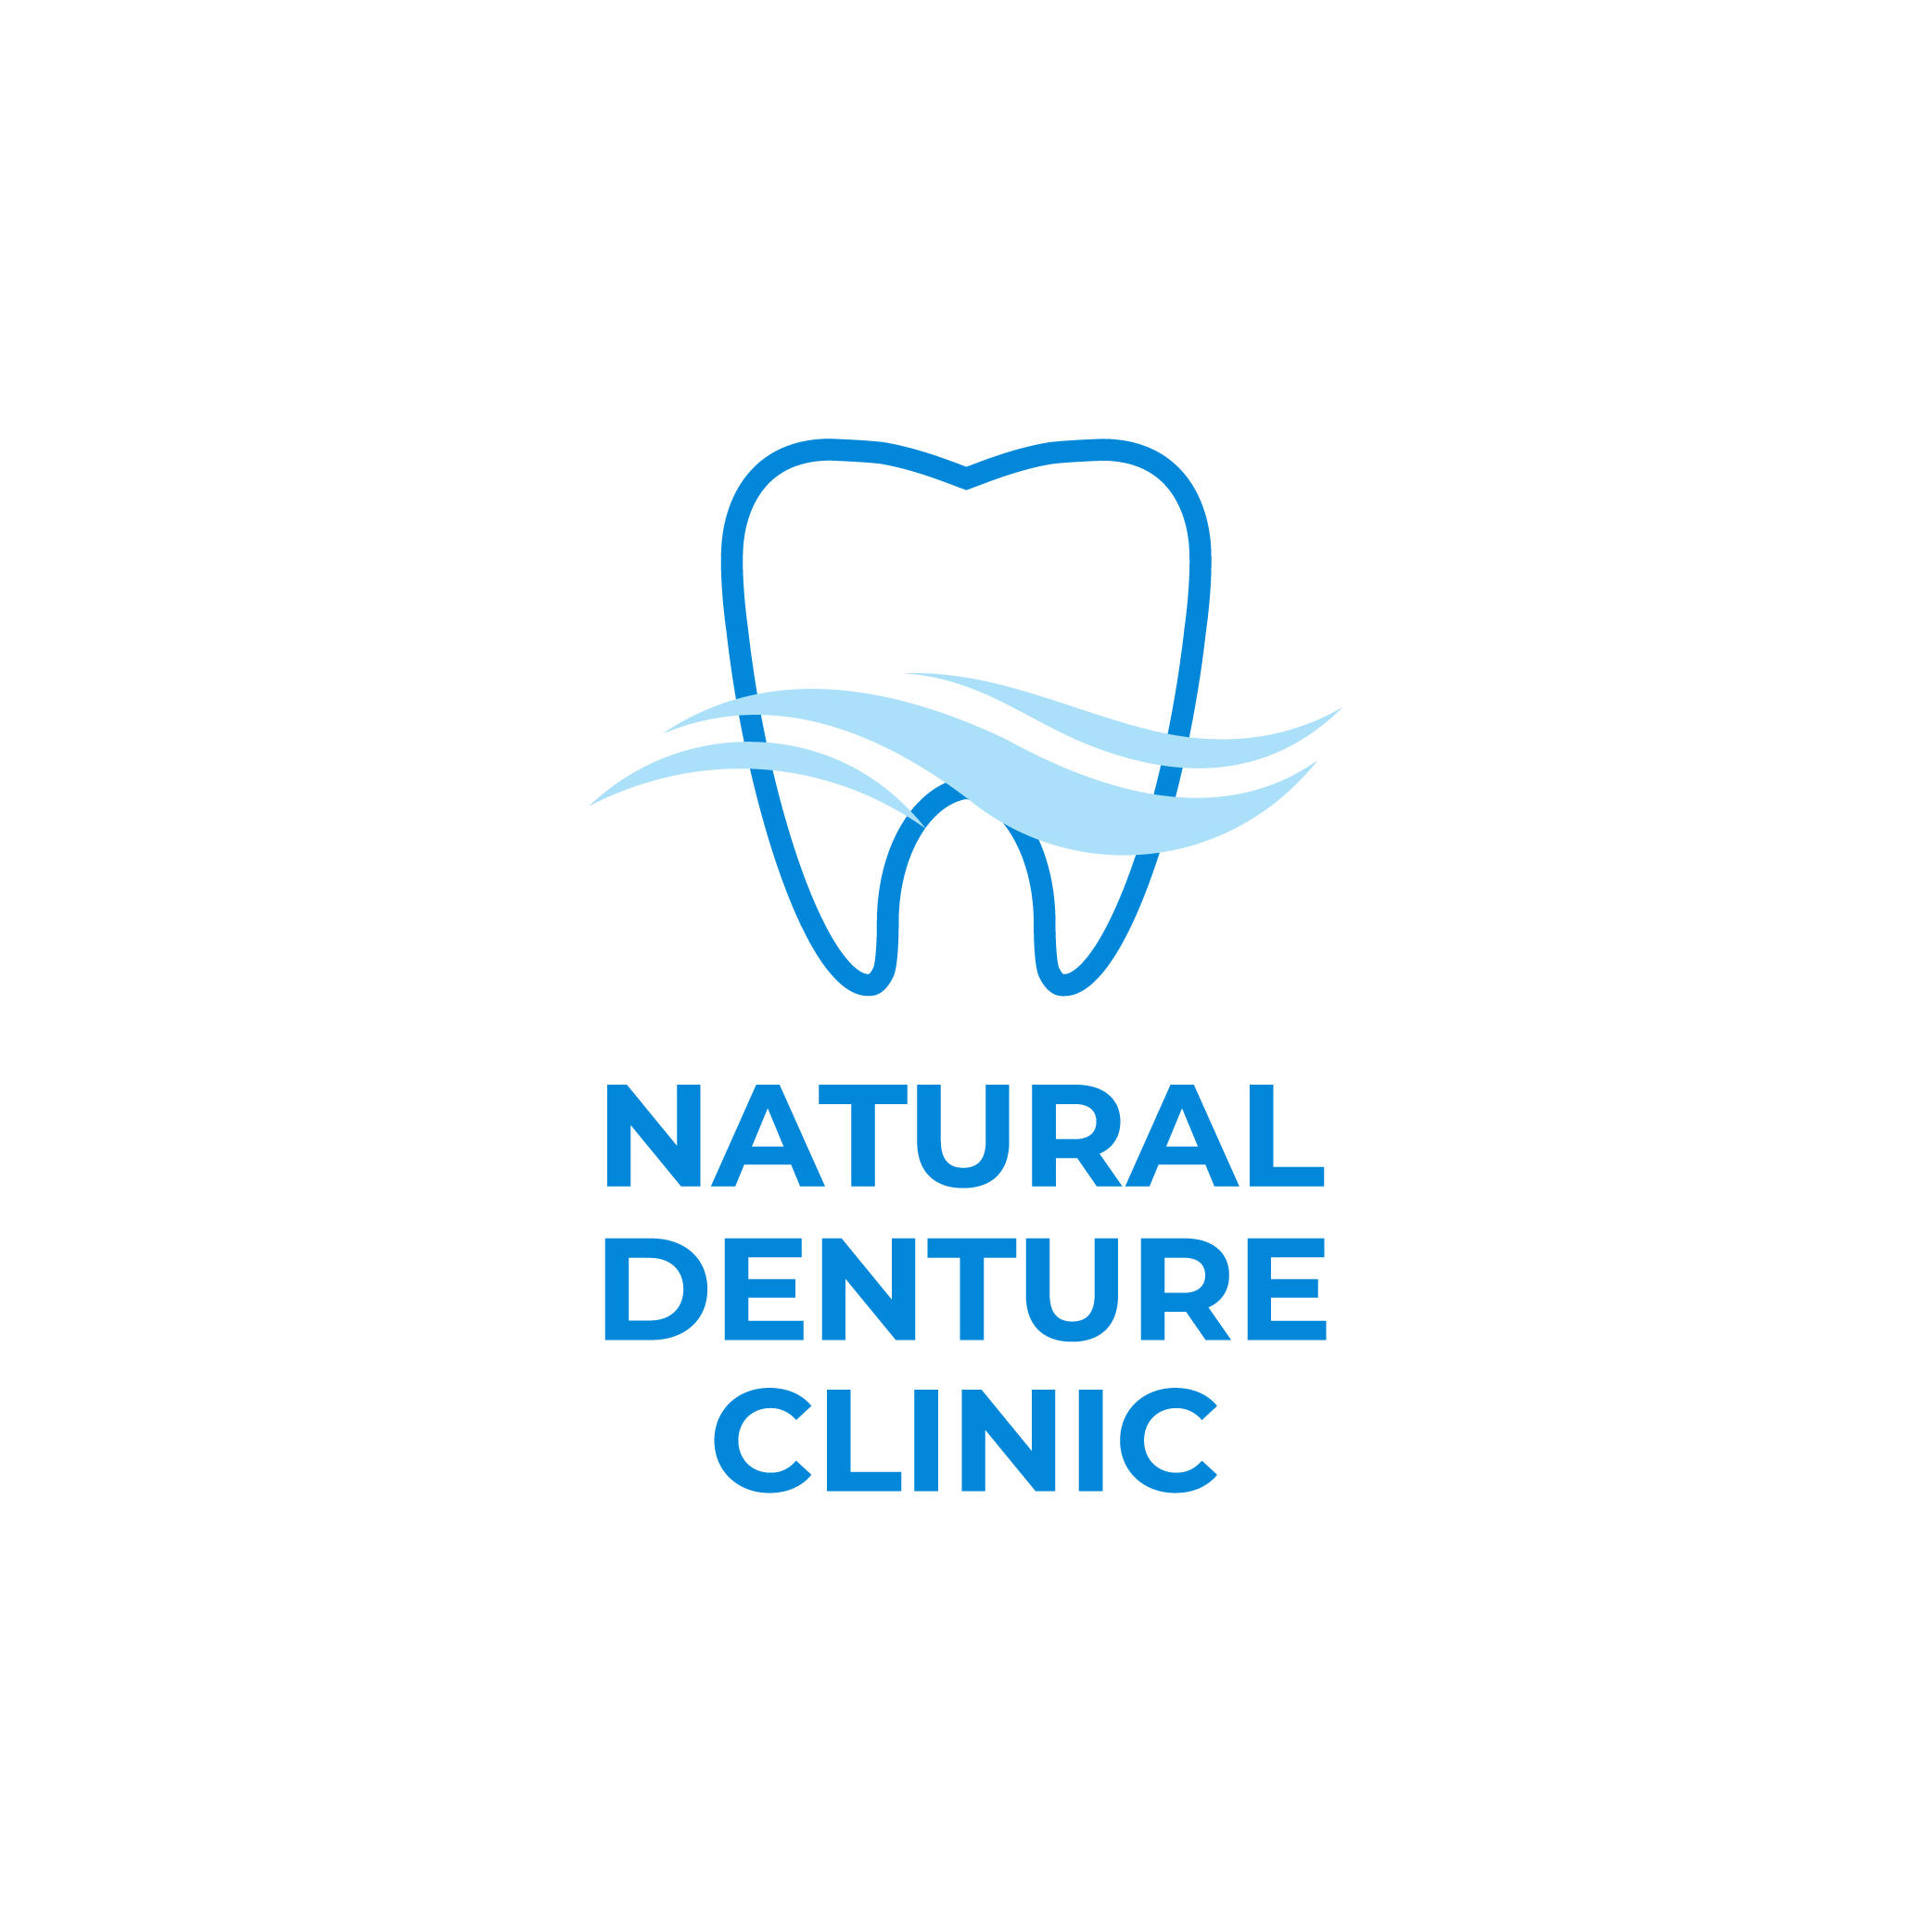 Natural Denture Clinic - Port Noarlunga, SA - (08) 8384 6495 | ShowMeLocal.com